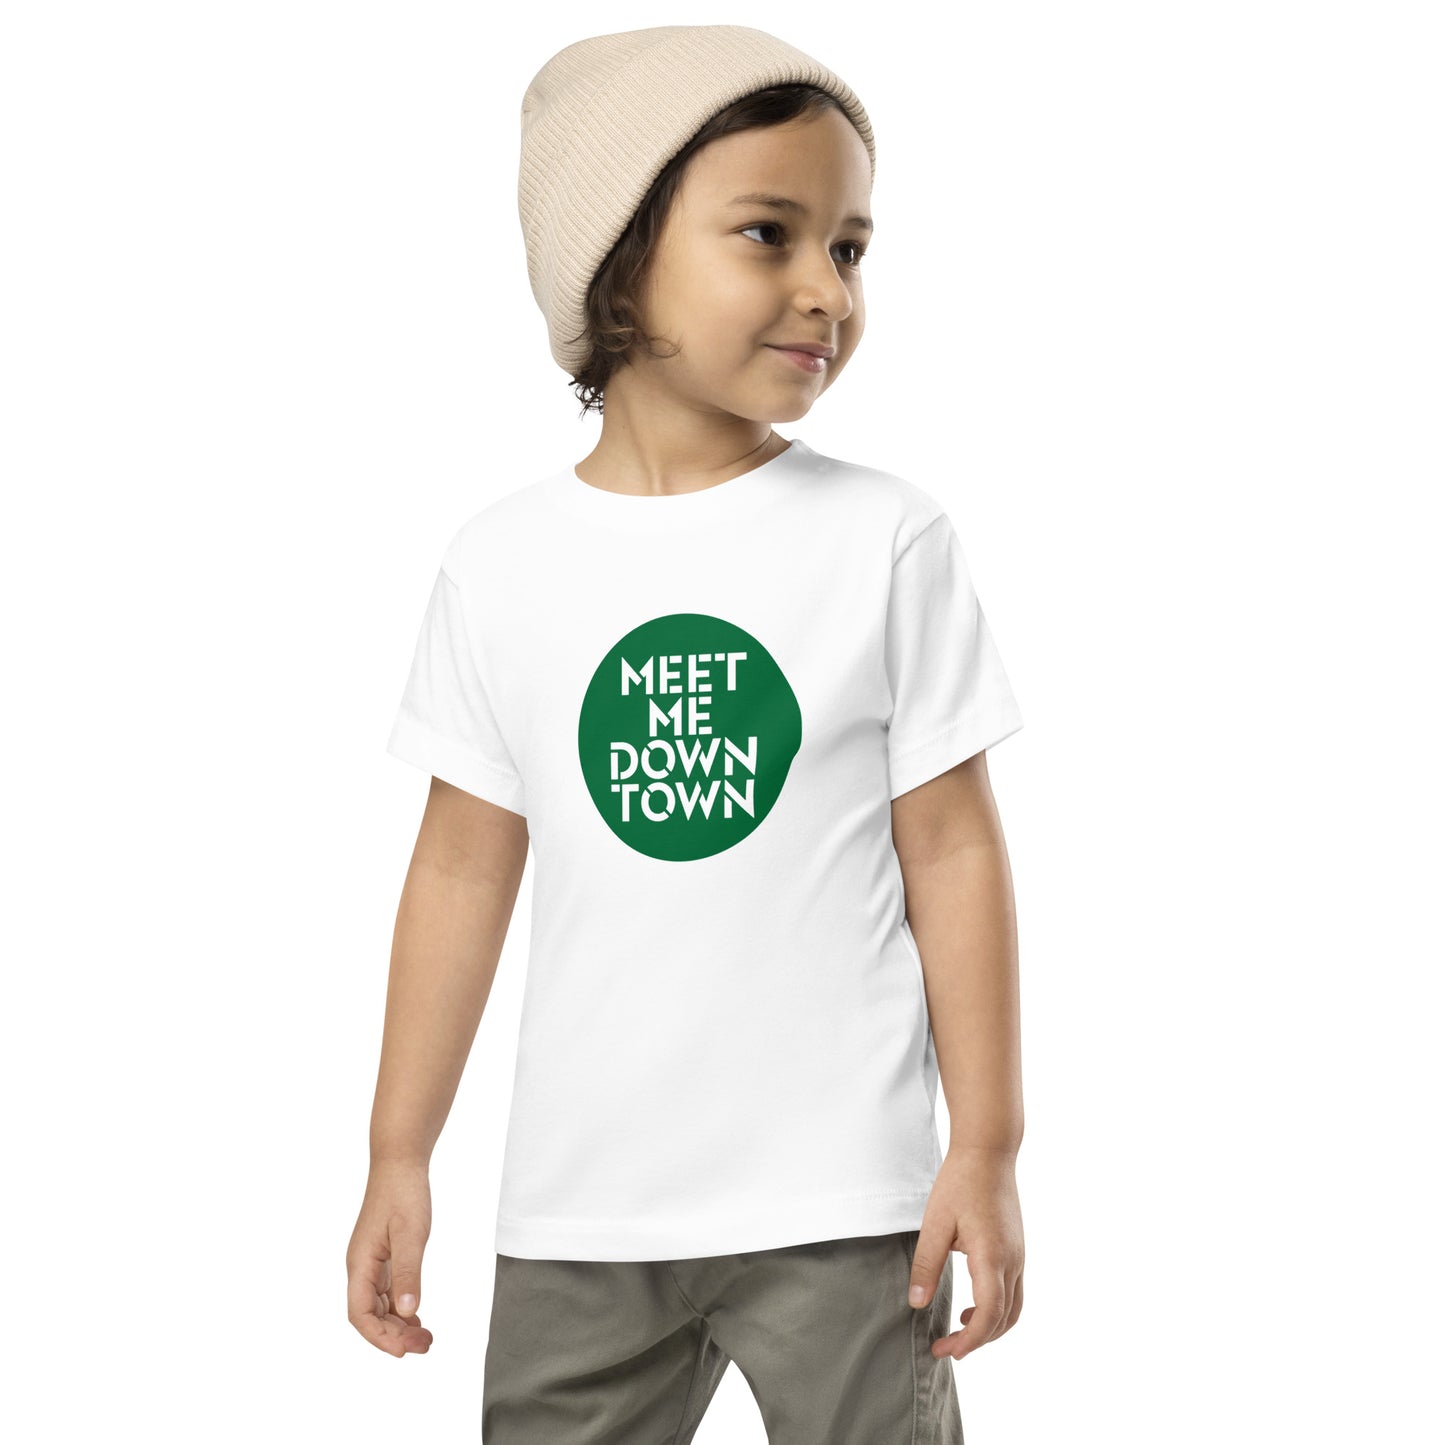 "Meet Me Downtown" Green Kids/Toddler Short Sleeve Tee